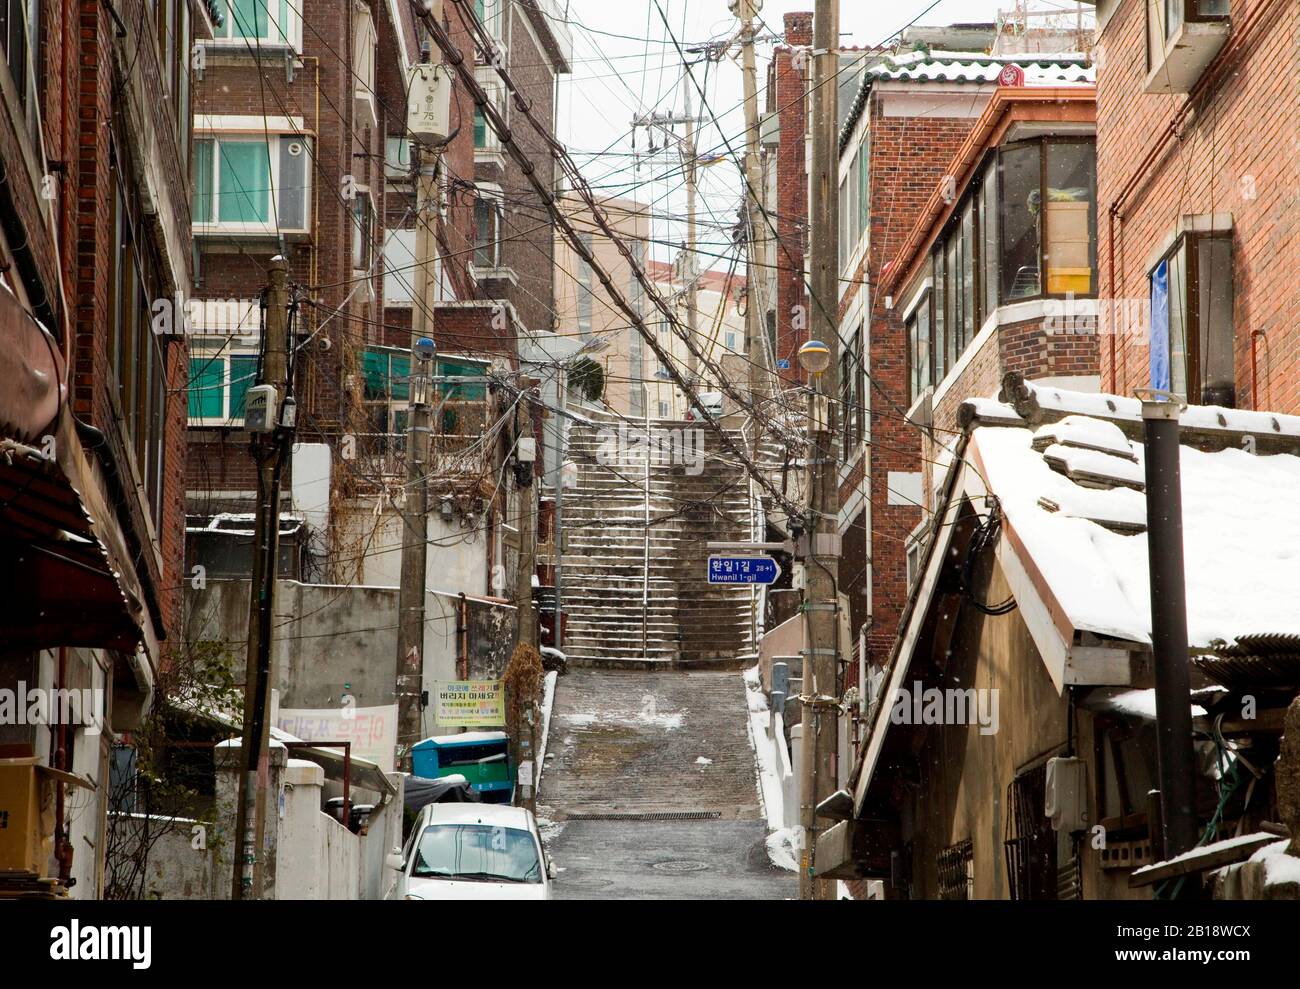 Die Treppe zu Kims Haus im Film "Parasite", 17. Februar 2020: Die Treppe zu Kims Haus im koreanischen Film "Parasite" ist in Seoul, Südkorea zu sehen. Die Treppe ist ein ikonischer Drehort des Oscar-prämierten Films "Parasite" unter der Regie von Bong Joon-Ho. Credit: Lee Jae-Won/AFLO/Alamy Live News Stockfoto